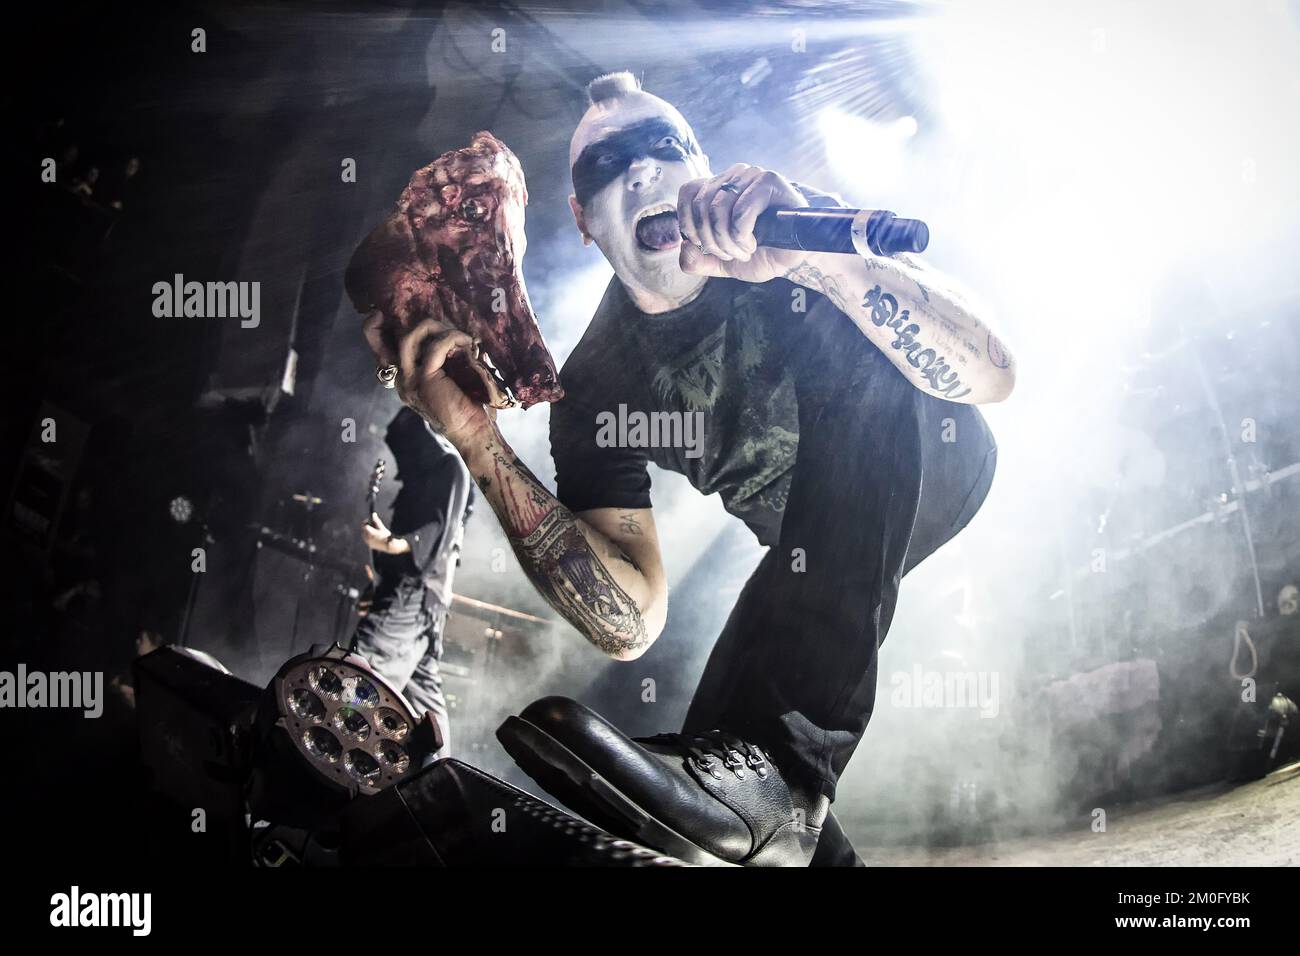 La band norvegese di metallo nero Mayhem (spesso chiamata True Mayhem) suona in concerto al festival norvegese di metallo pesante Inferno Festival 2016 di Oslo. Il cantante Maniac della band sul palco. Foto Stock